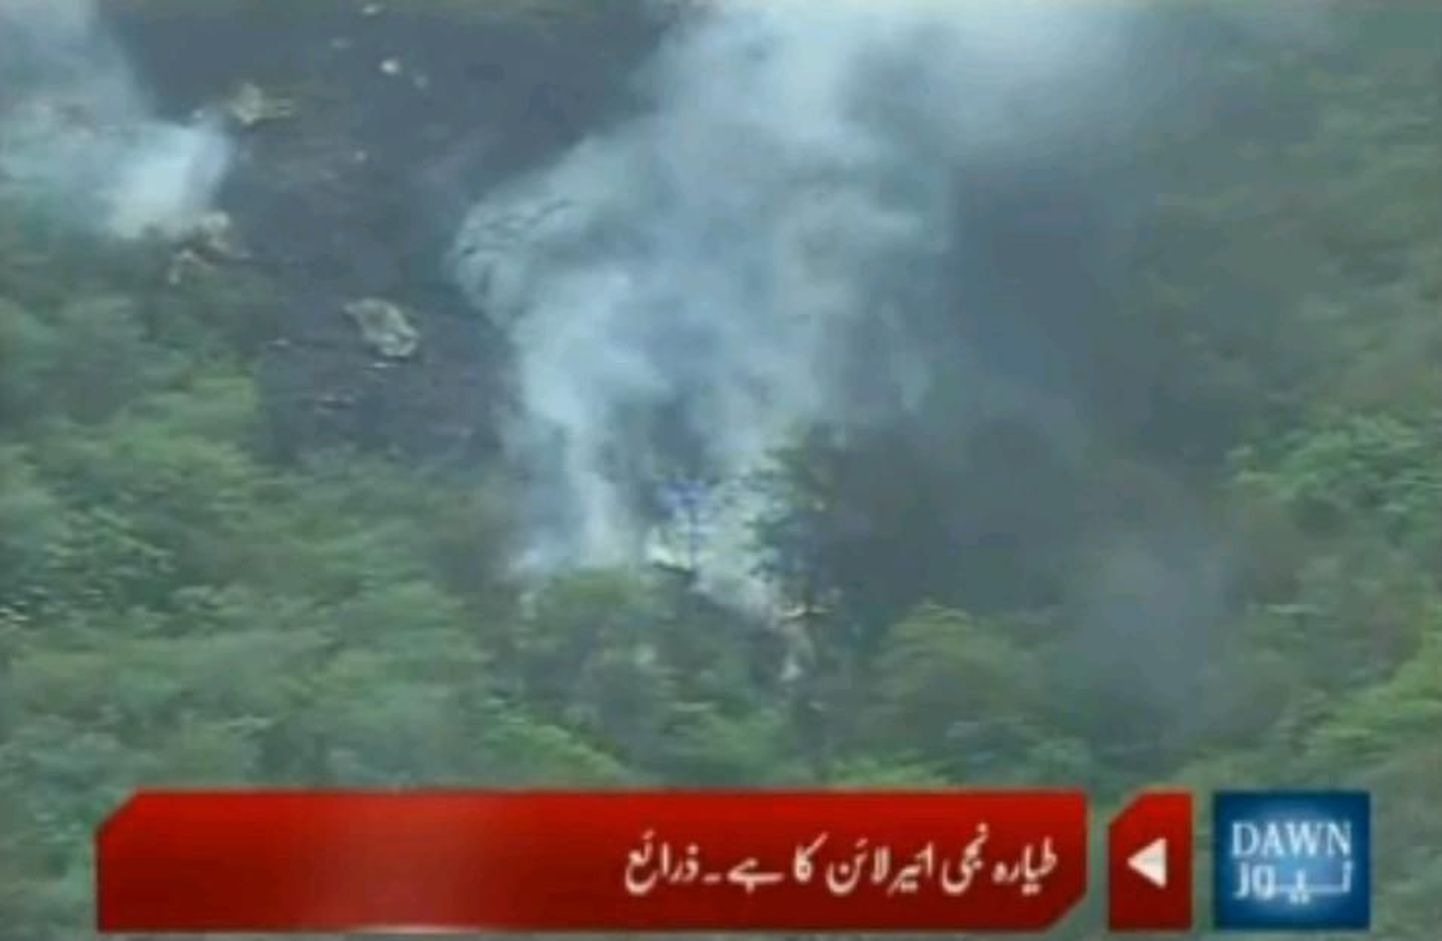 Кадр с места падения самолета в Пакистане.